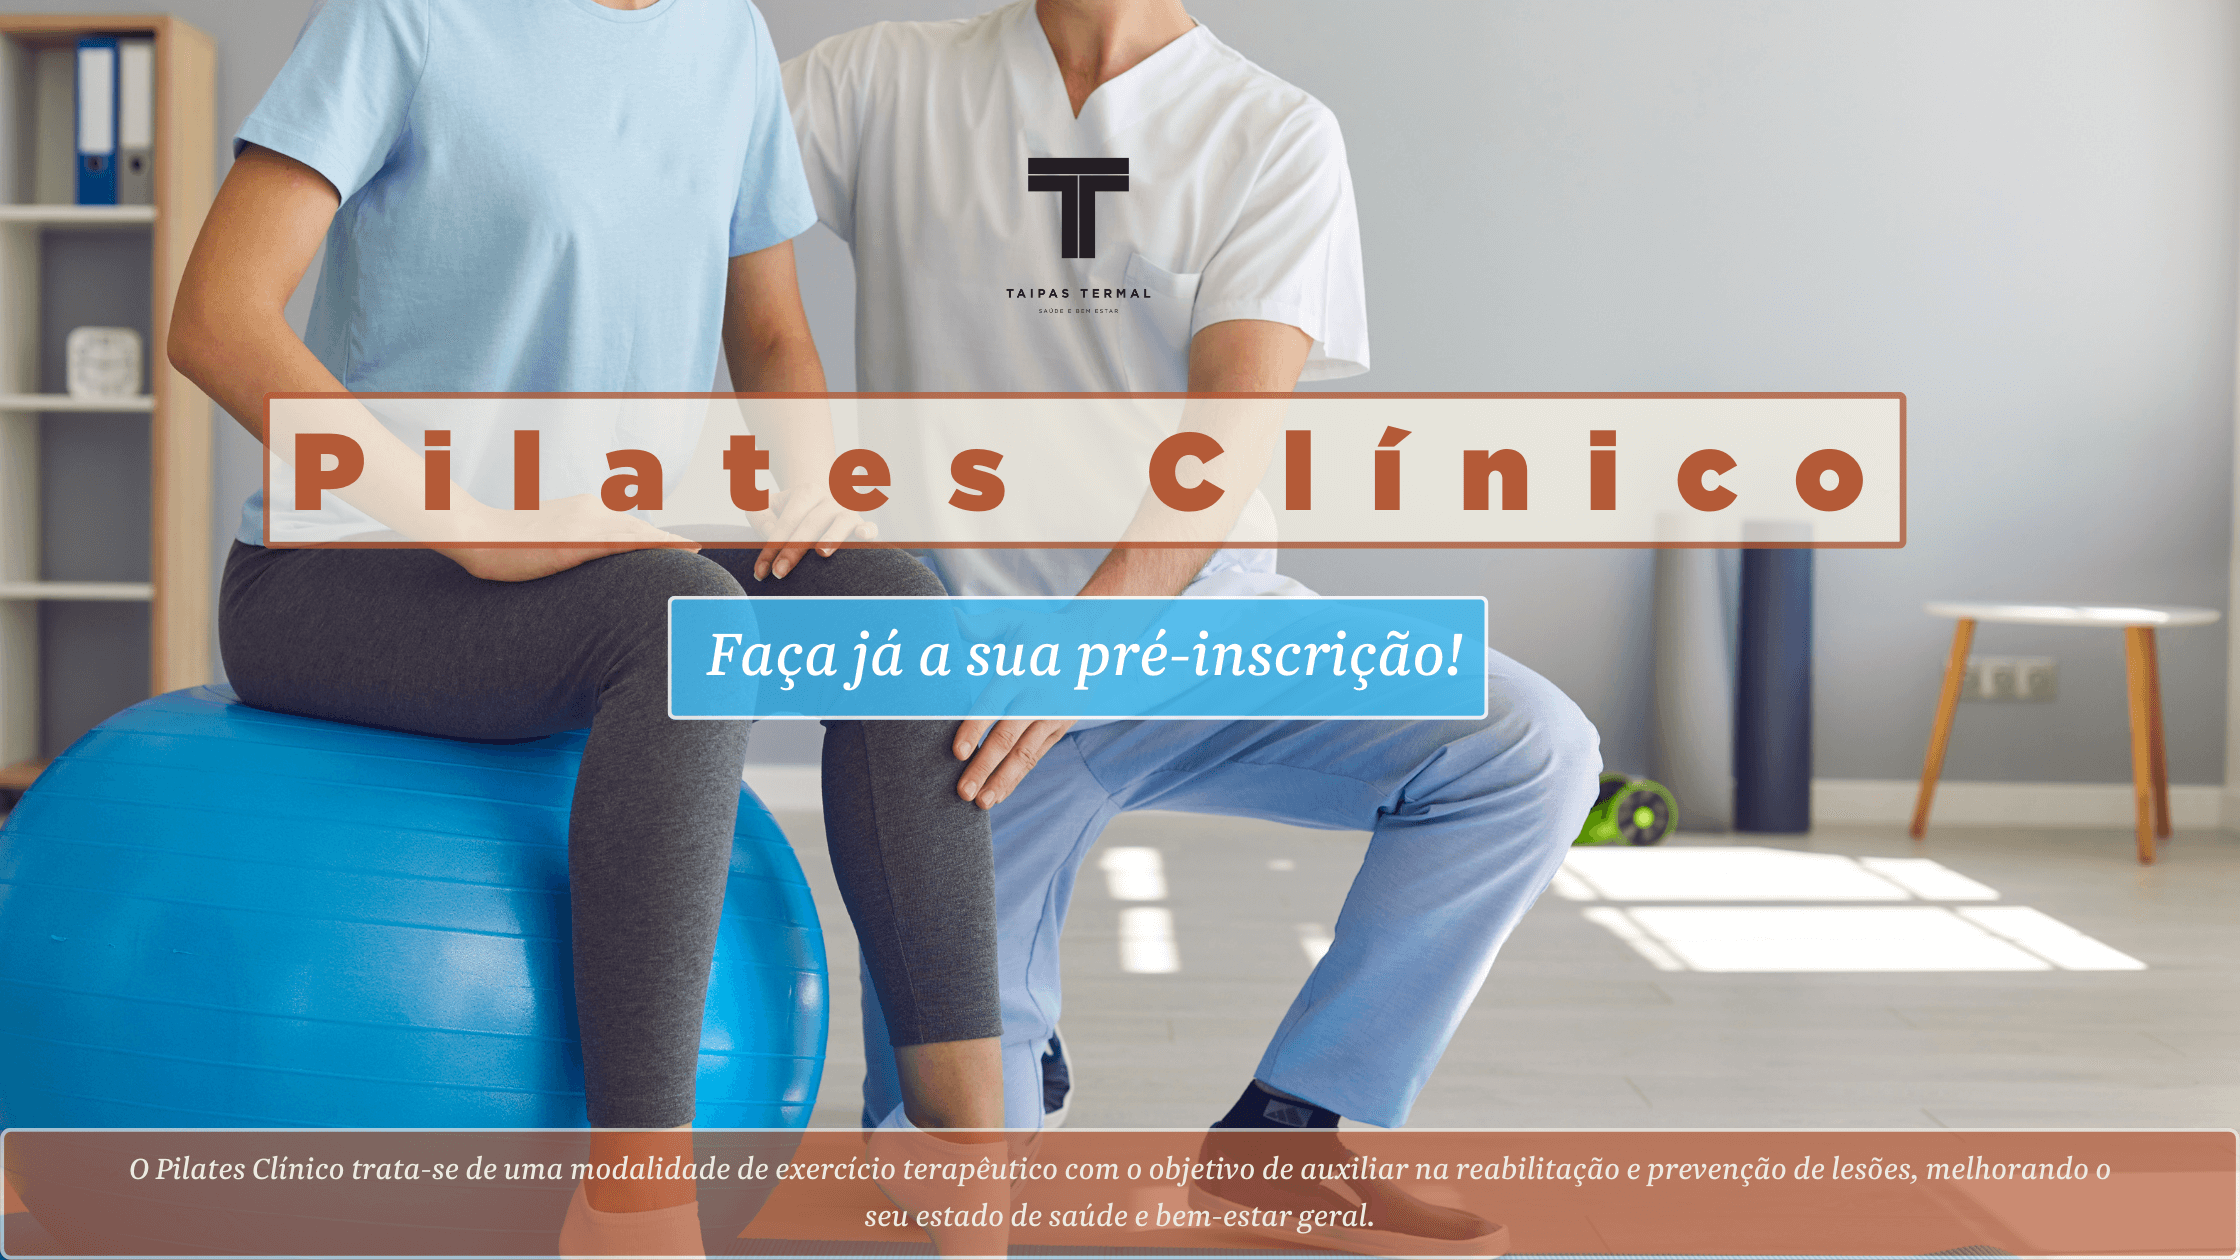 Pilates Clinico - Exercício físico com orientação especializada e  terapêutica – Taipas Termal